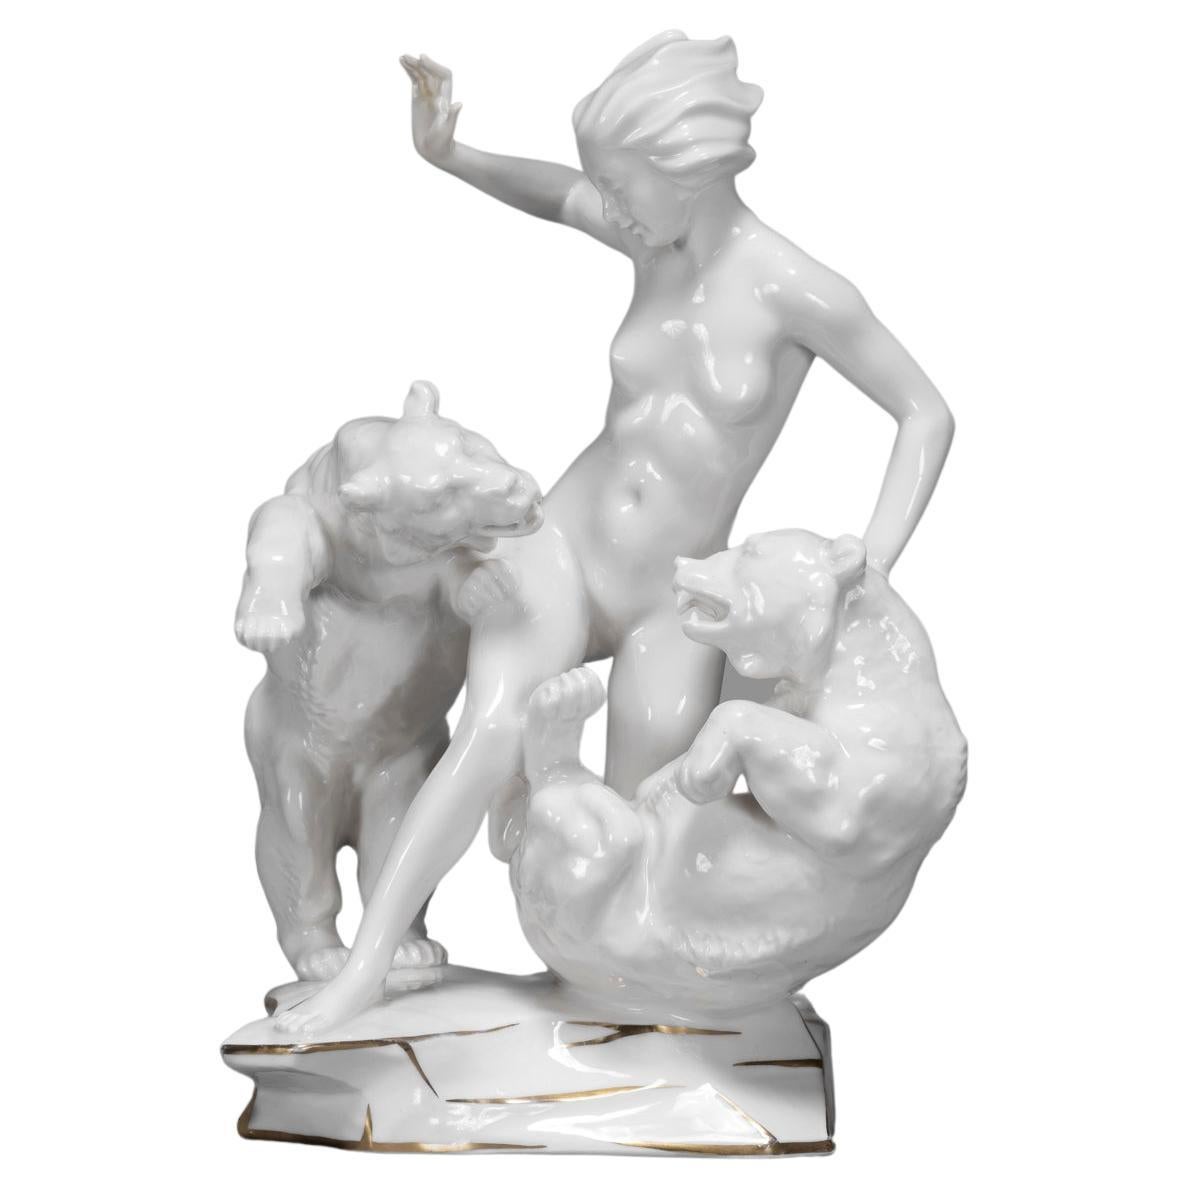 Hutschenreuther Porcelain Figurine   "JEALOUSLY"   Karl Tutter 1938